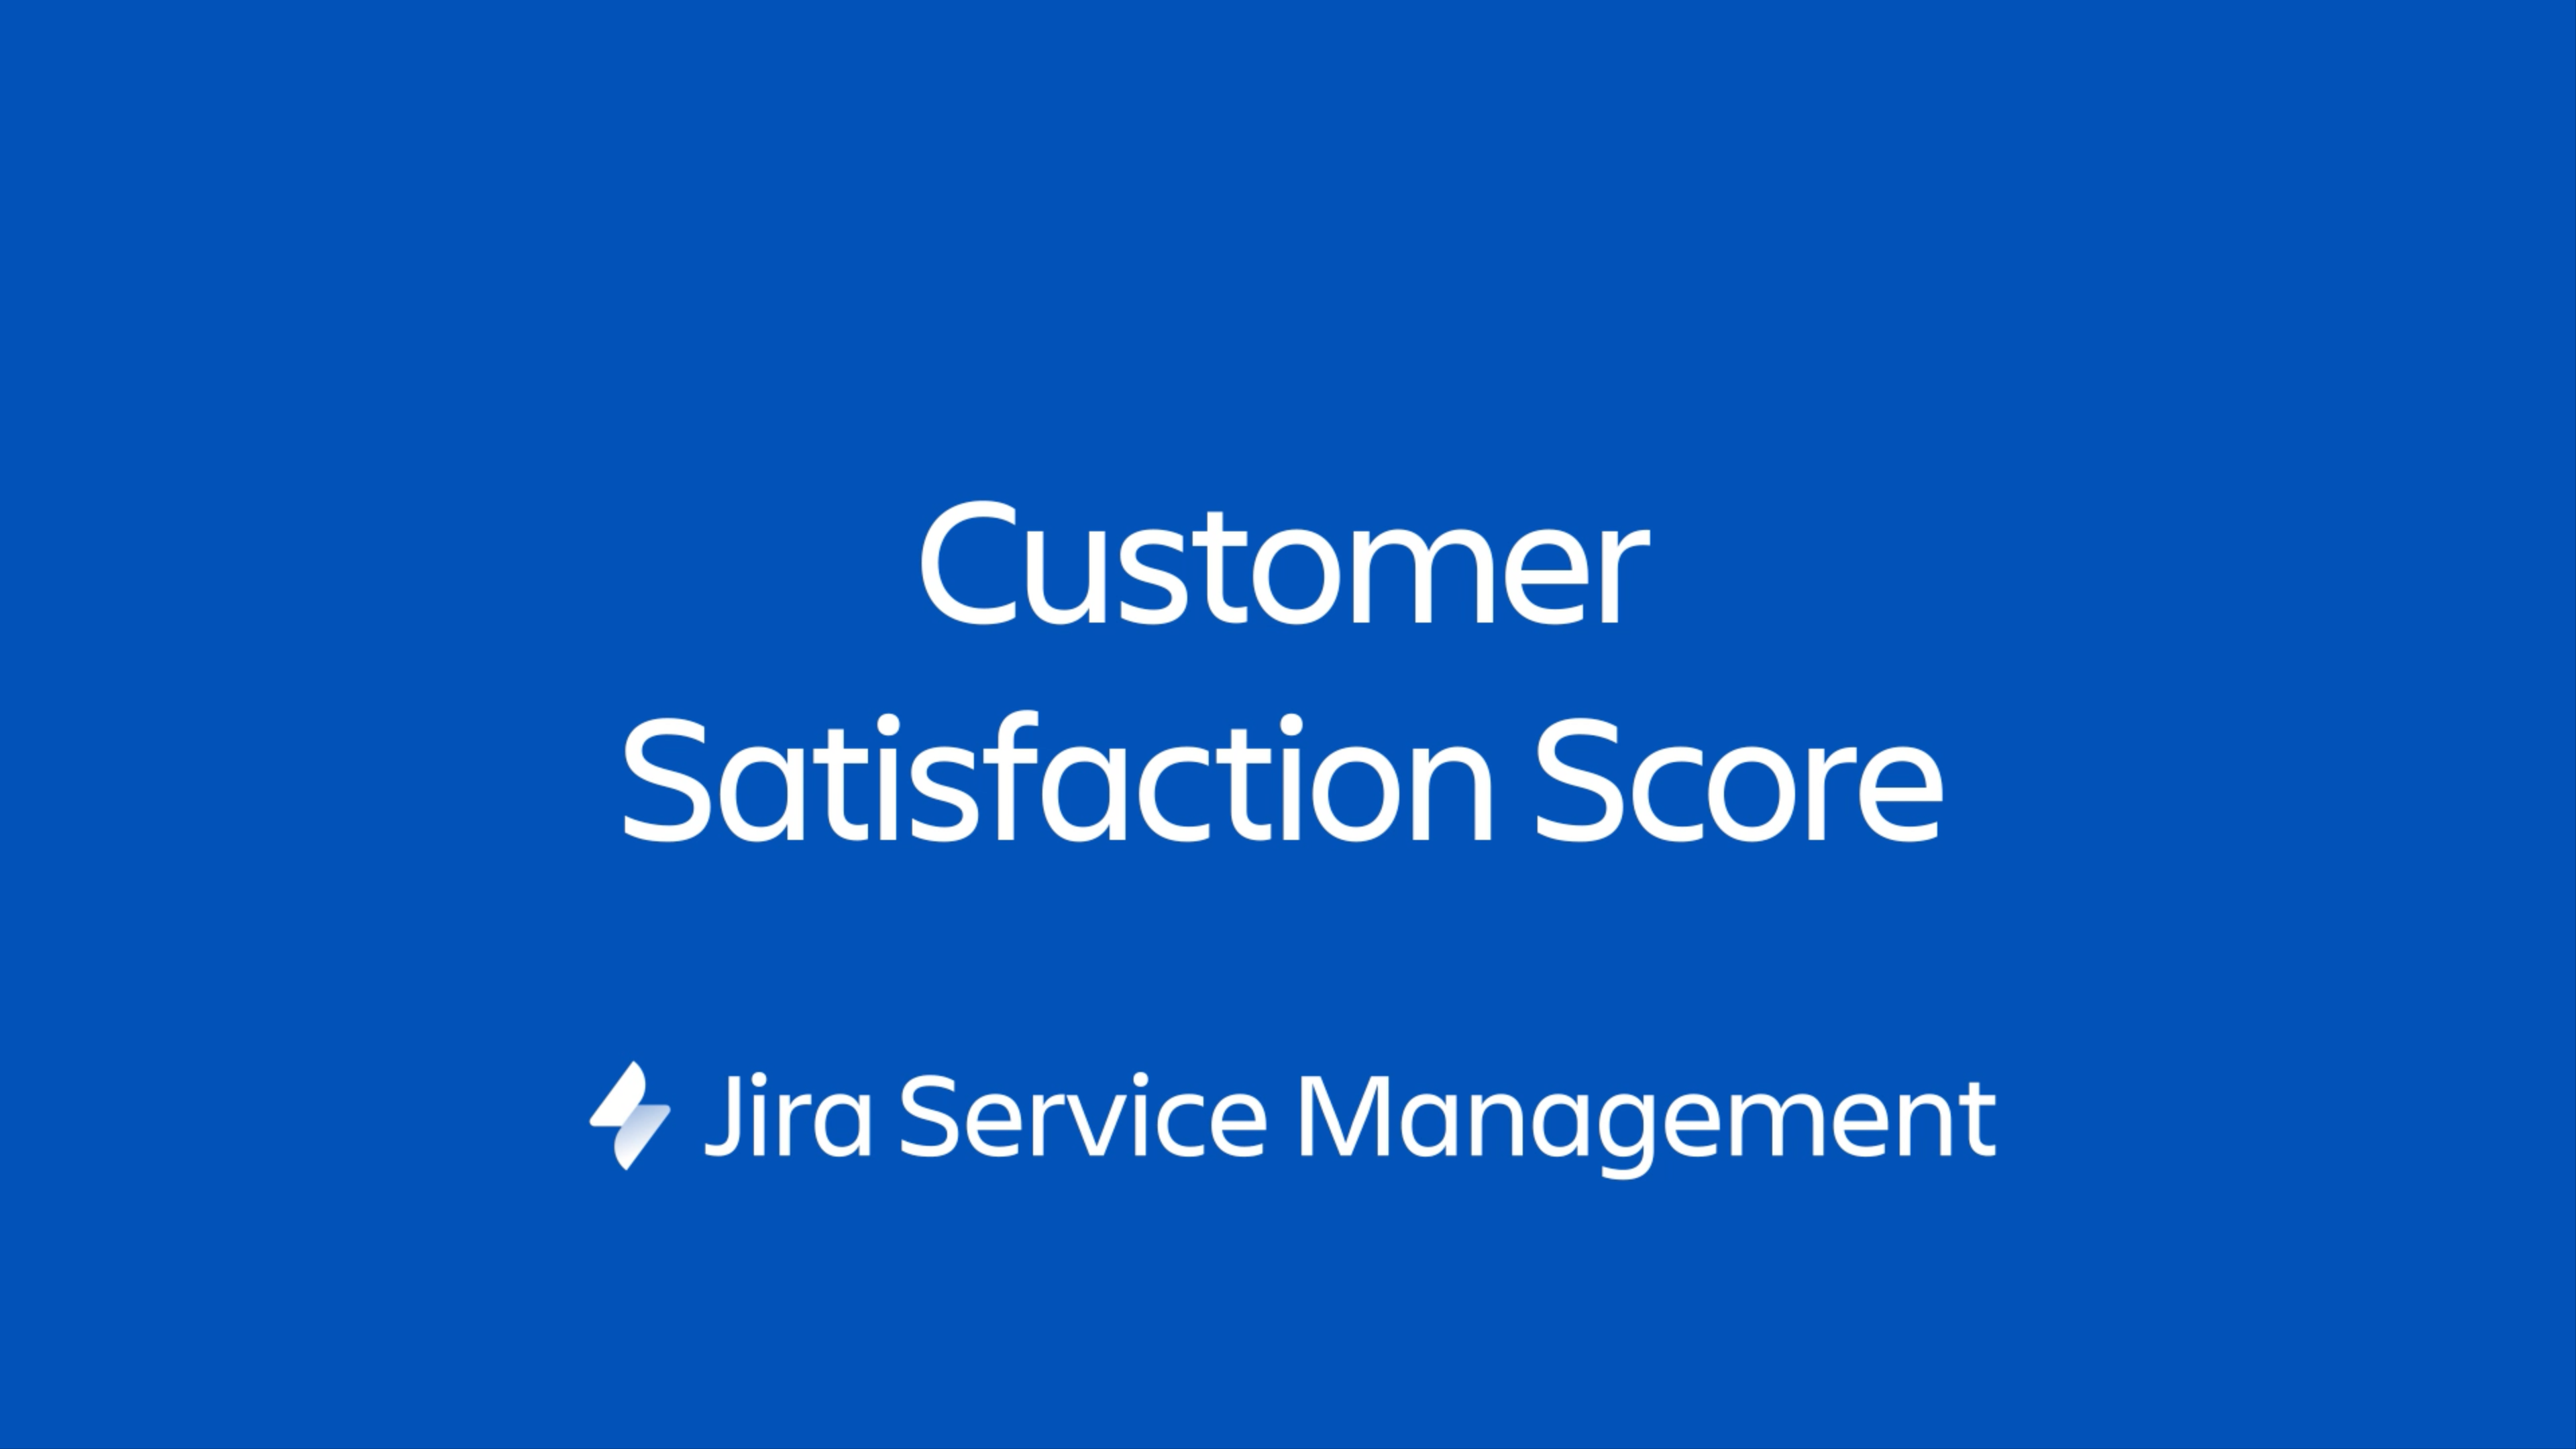 Jira Service Management ウィジェットは、ユーザーが管理する Web ページ上に埋め込むことができるミニポータルです。